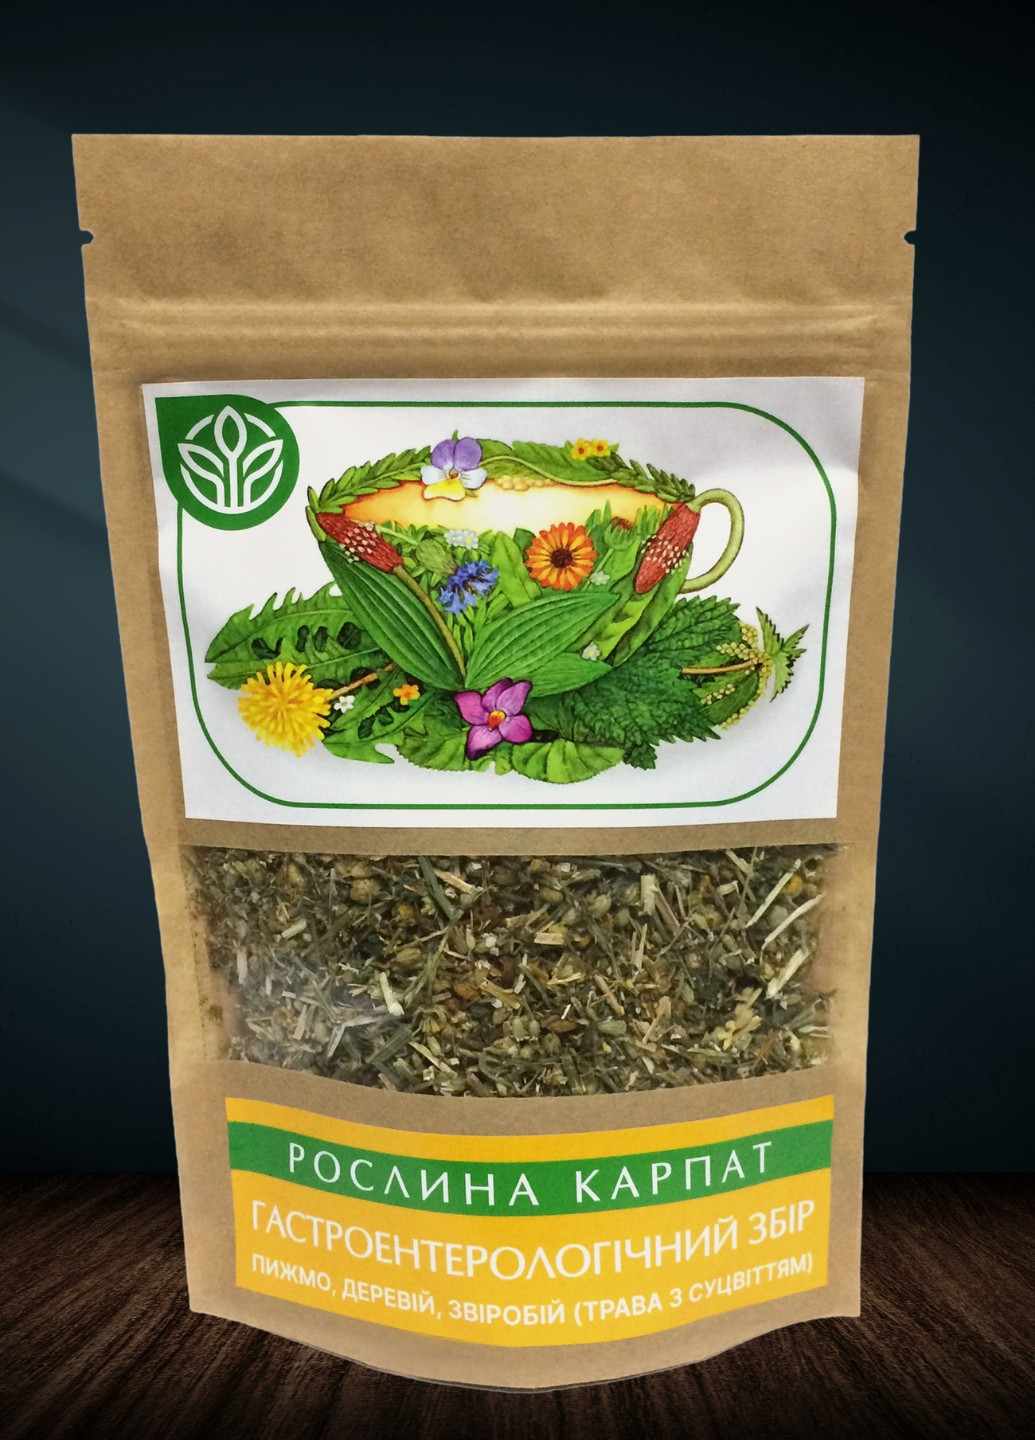 Гастроэнтерологический сбор 45 грамм | Для приготовления настоя или чая для нормализации пищеварения Рослина Карпат (277369776)